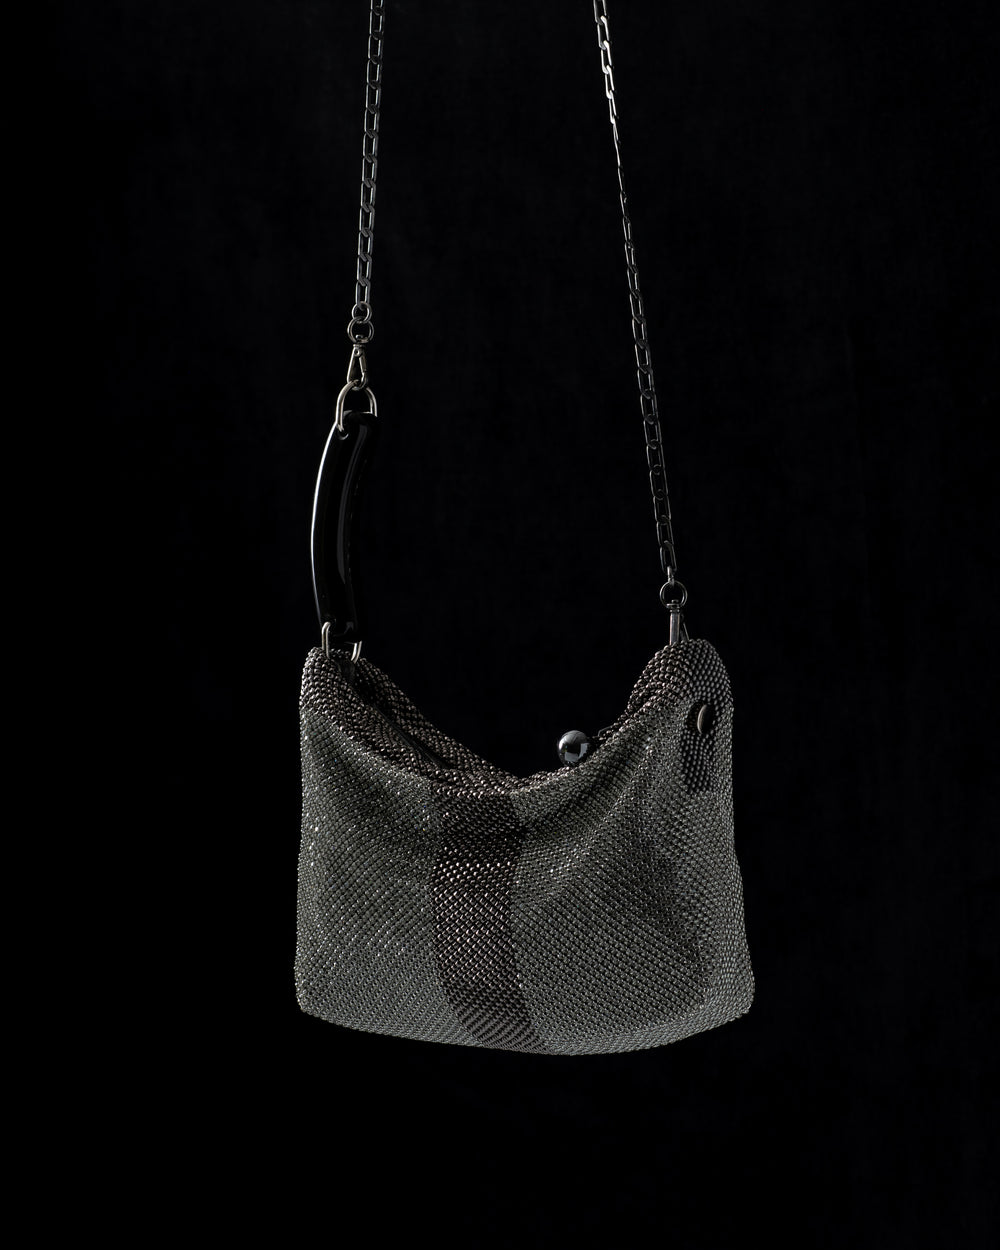 She Gala Handbag with Swarovski Crystals w/ Black Horn in Grey / Gunmetal